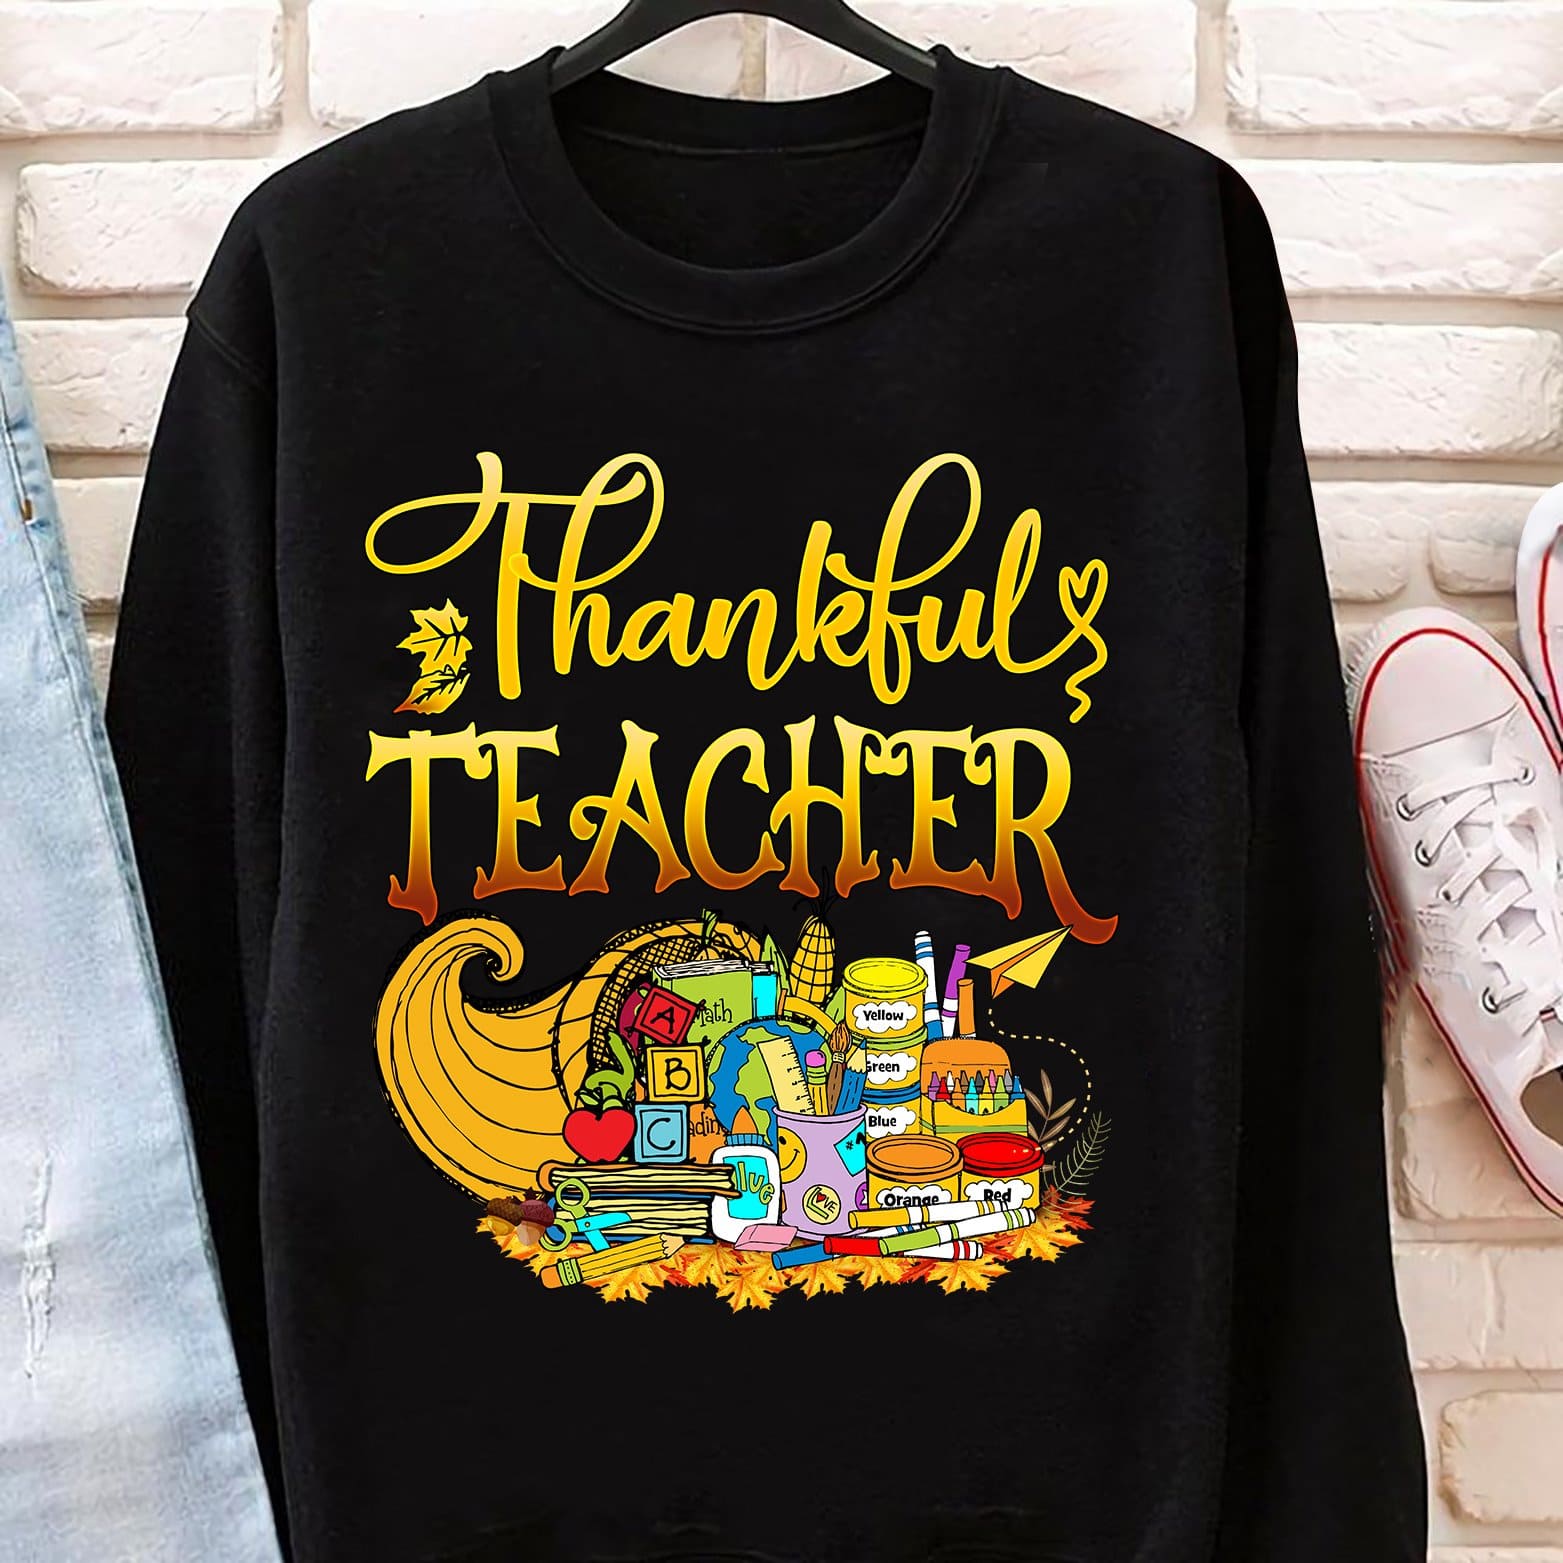 Thankful teacher - Thanksgiving gift for teacher, teacher educational job